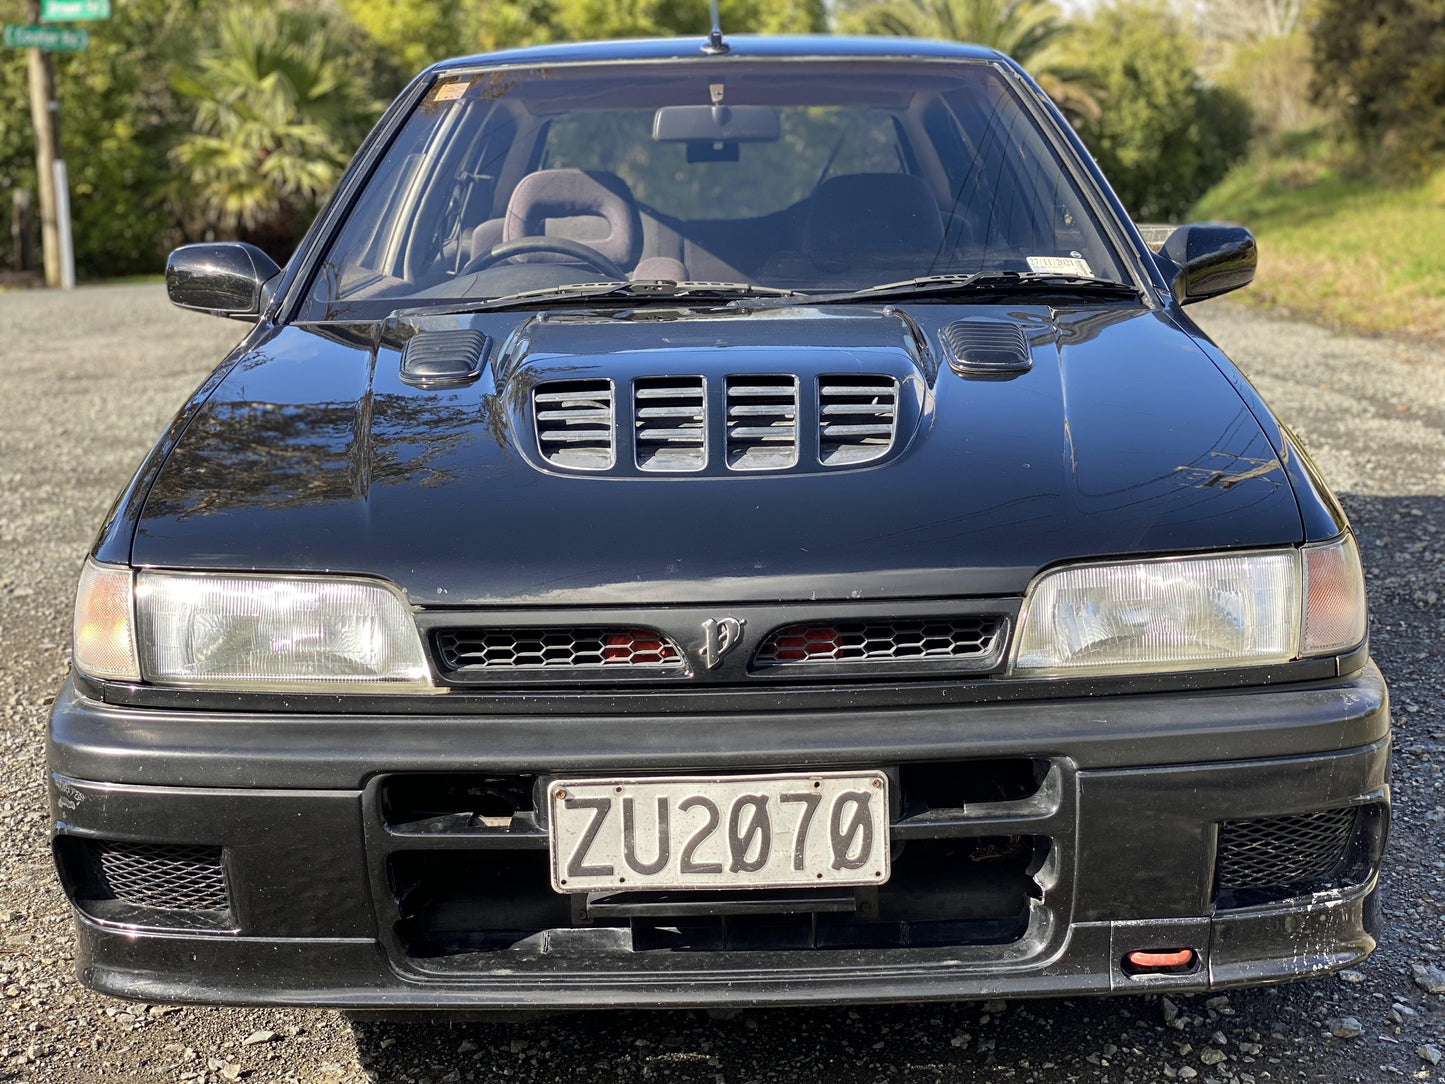 Nissan Pulsar GTI-R 1990 ( Baby Godzilla )